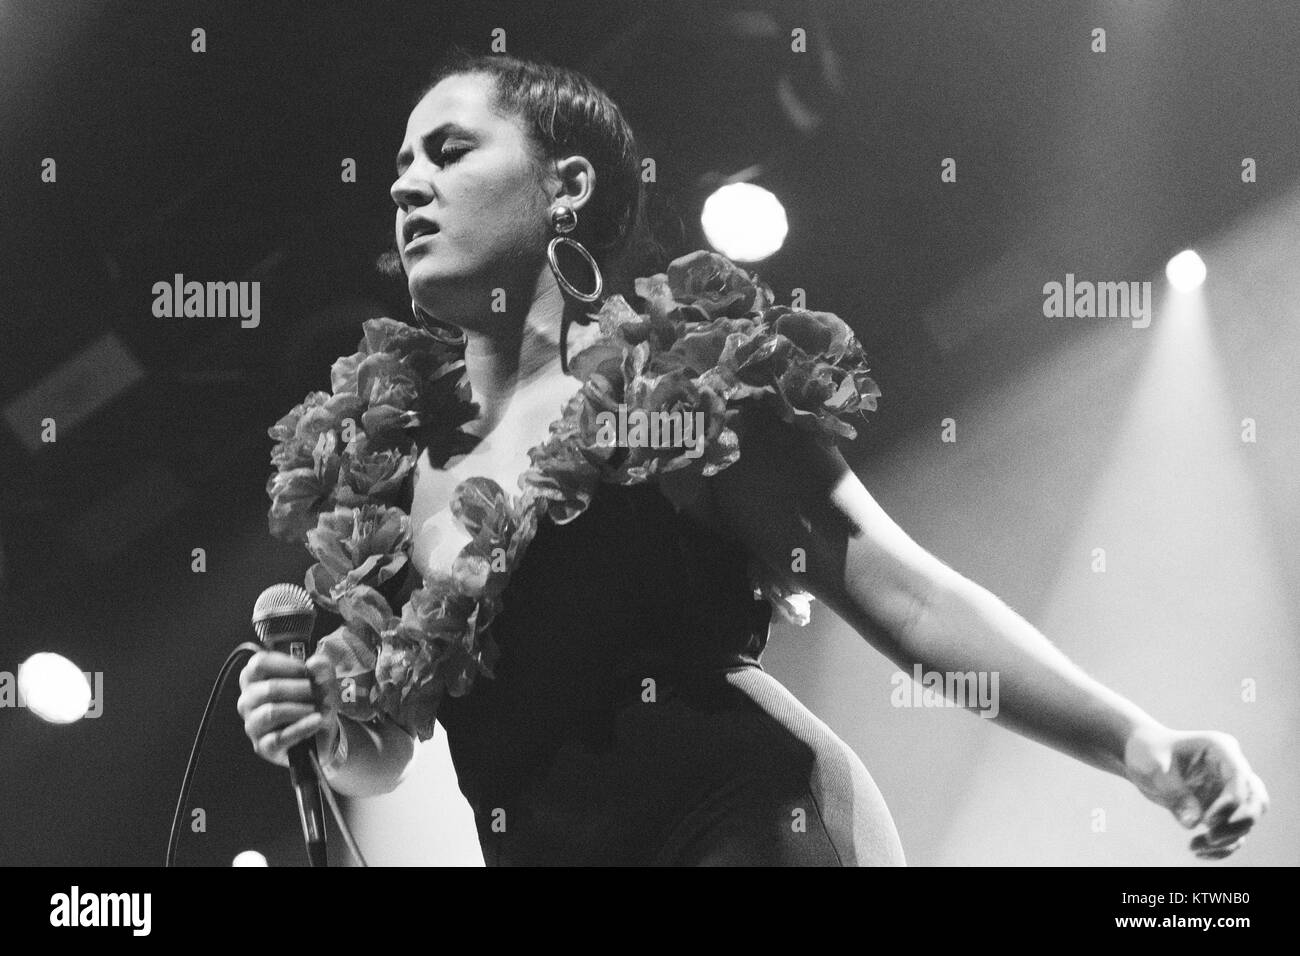 Die dänische neo-soul duo Zarah Leander führt ein Live Konzert beim Roskilde Festival 2013. Hier Sänger und Songwriter Coco Maja Hastrup Karshøj wird dargestellt, live auf der Bühne. Dänemark 06/07 2013. Stockfoto